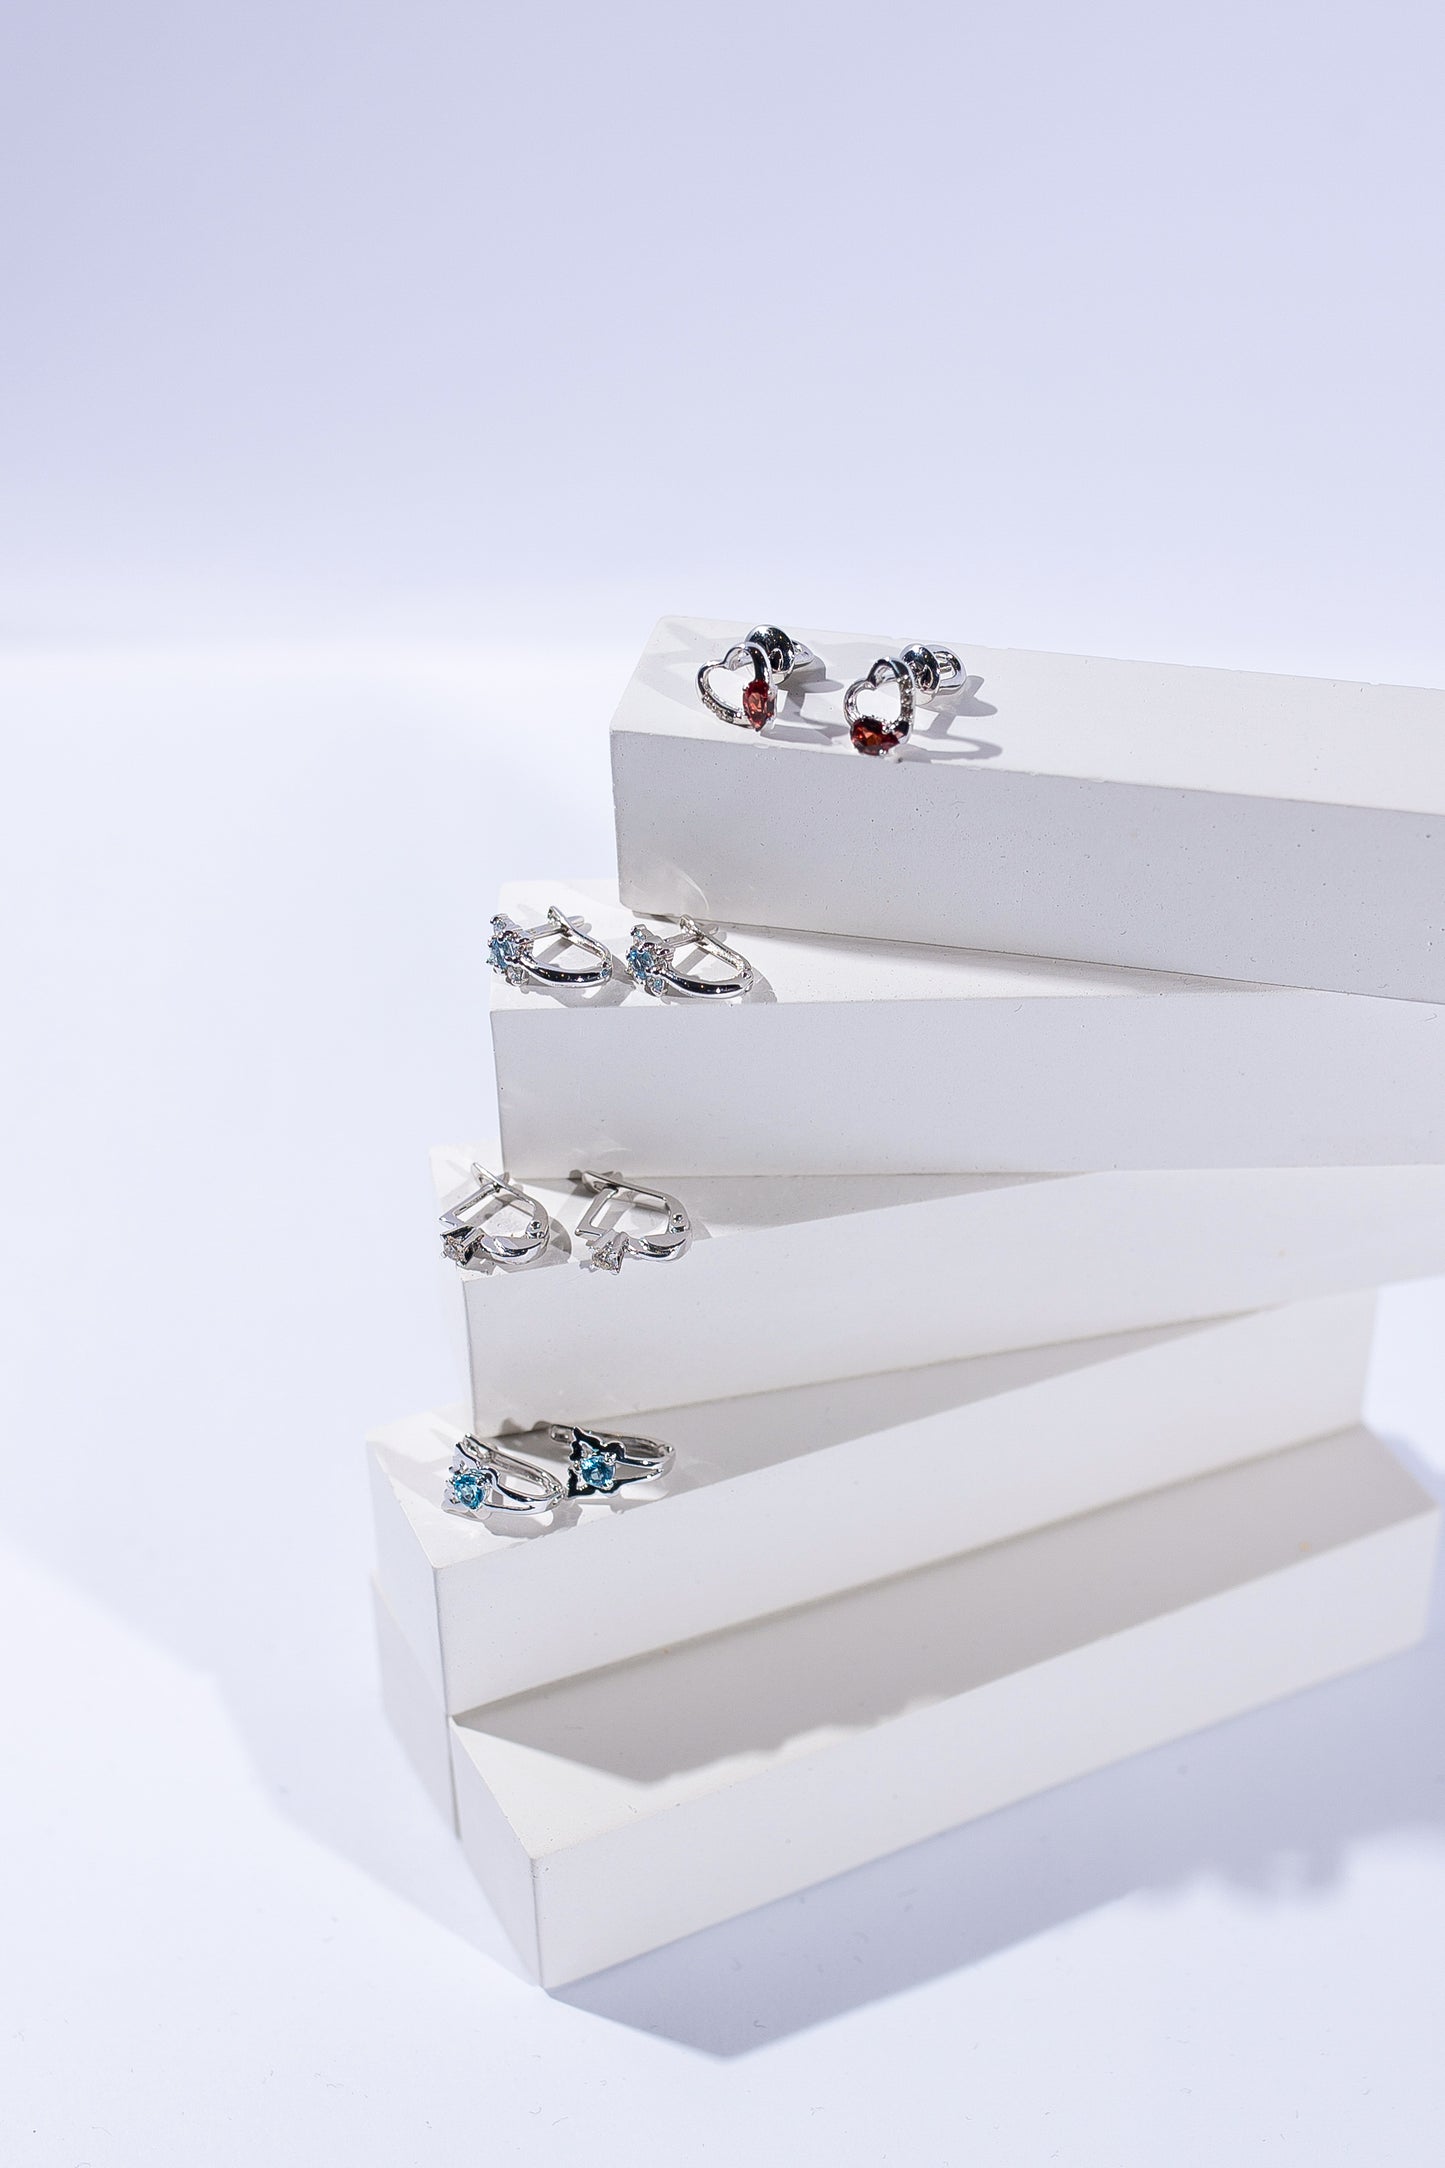 Чотири пари дитячих сережок з білого золота з діамантами зображені на підставках